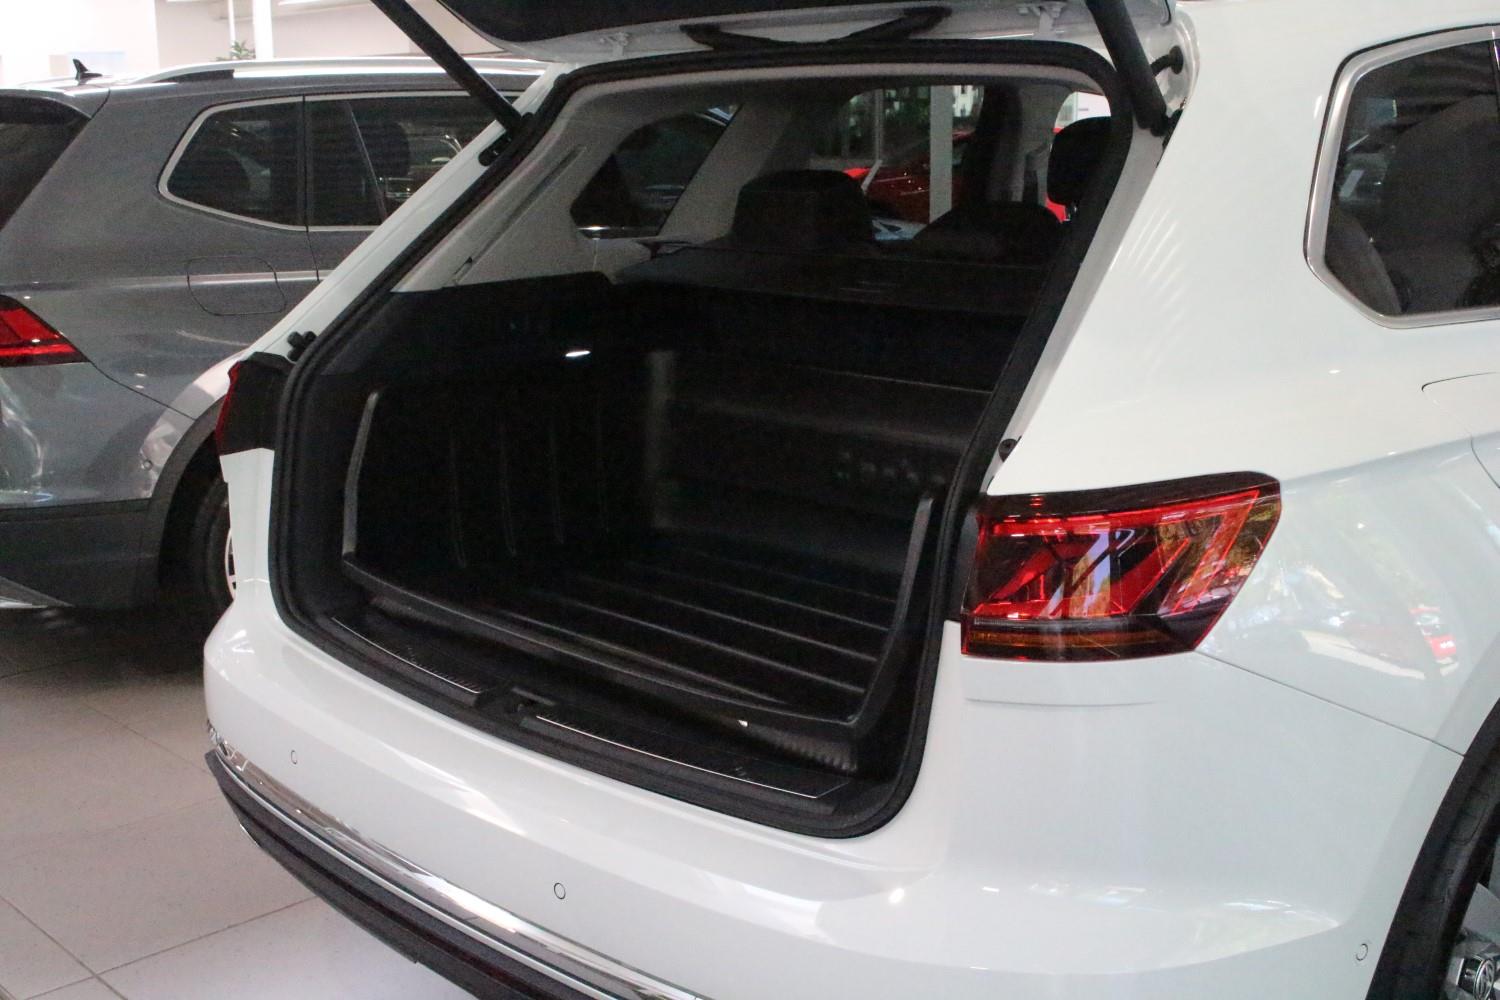 Kofferraumwanne Volkswagen Tiguan II Allspace Carbox Yoursize